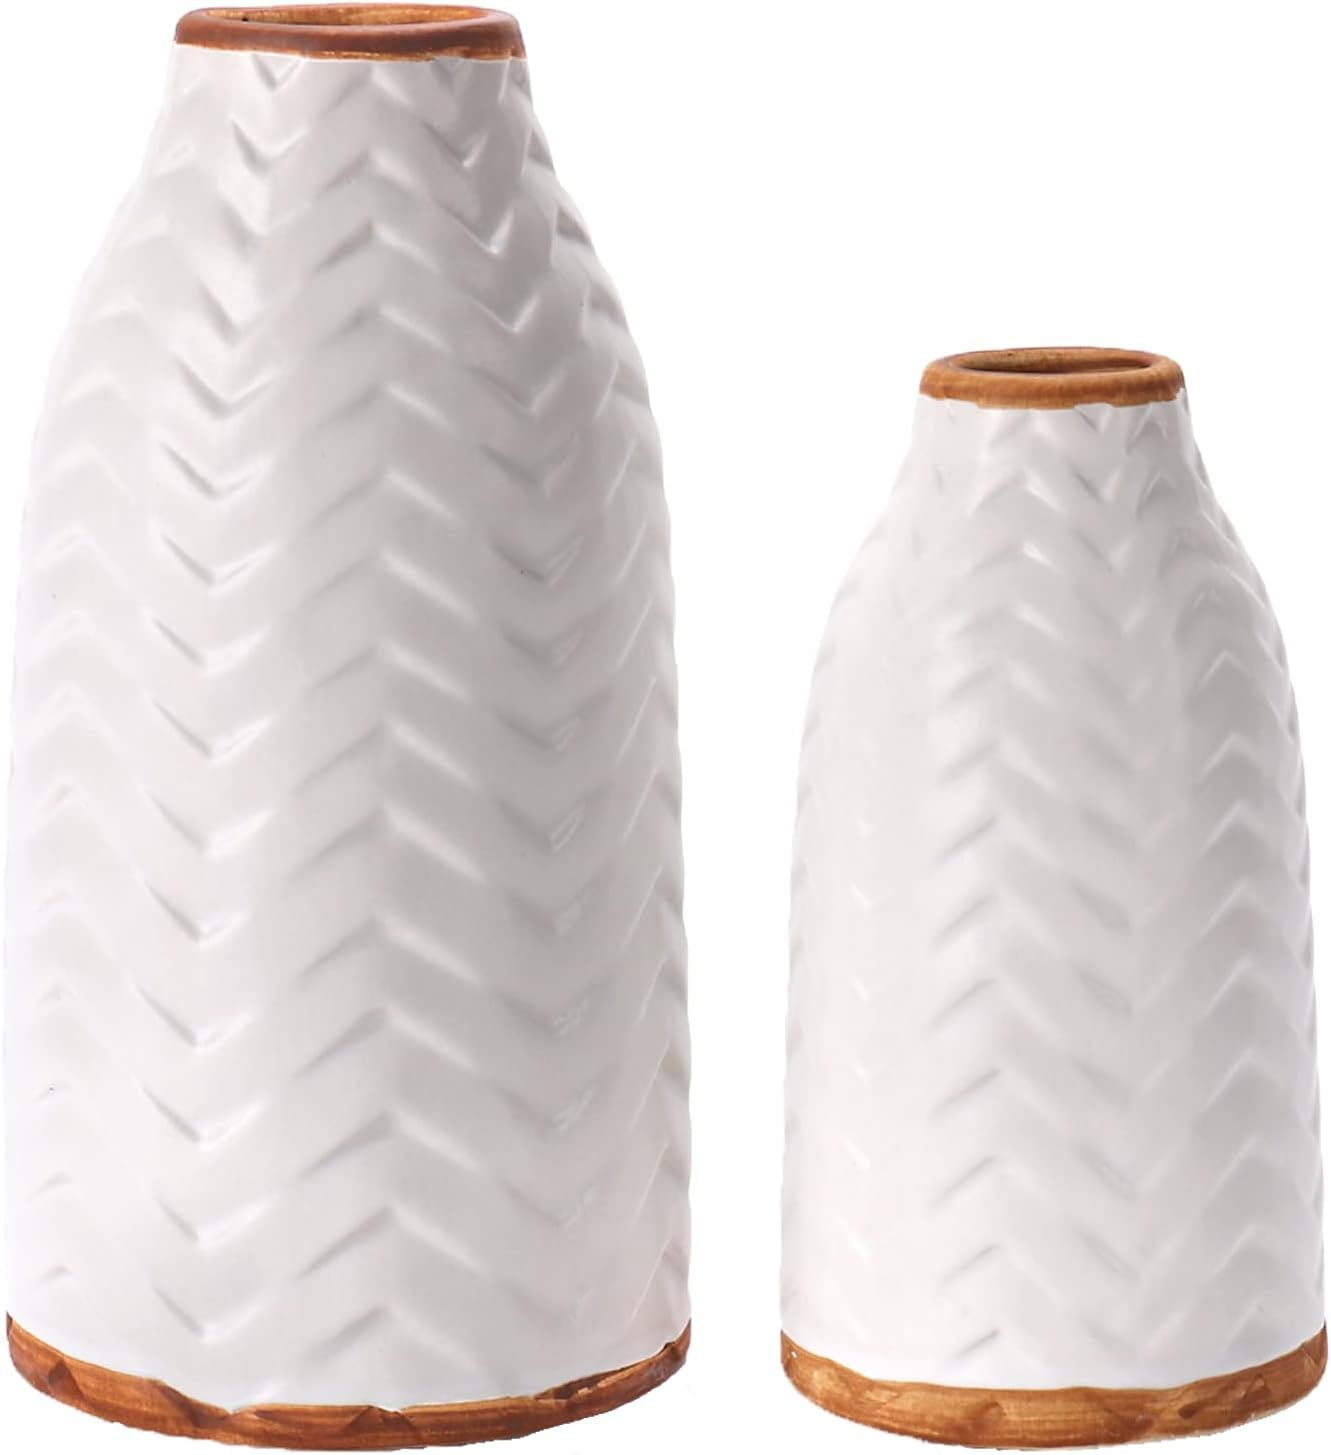 LiteViso Ceramic White Vases, Modern Rustic Vases, Farmhouse Decorative Flower Vases, White Woven... | Amazon (US)